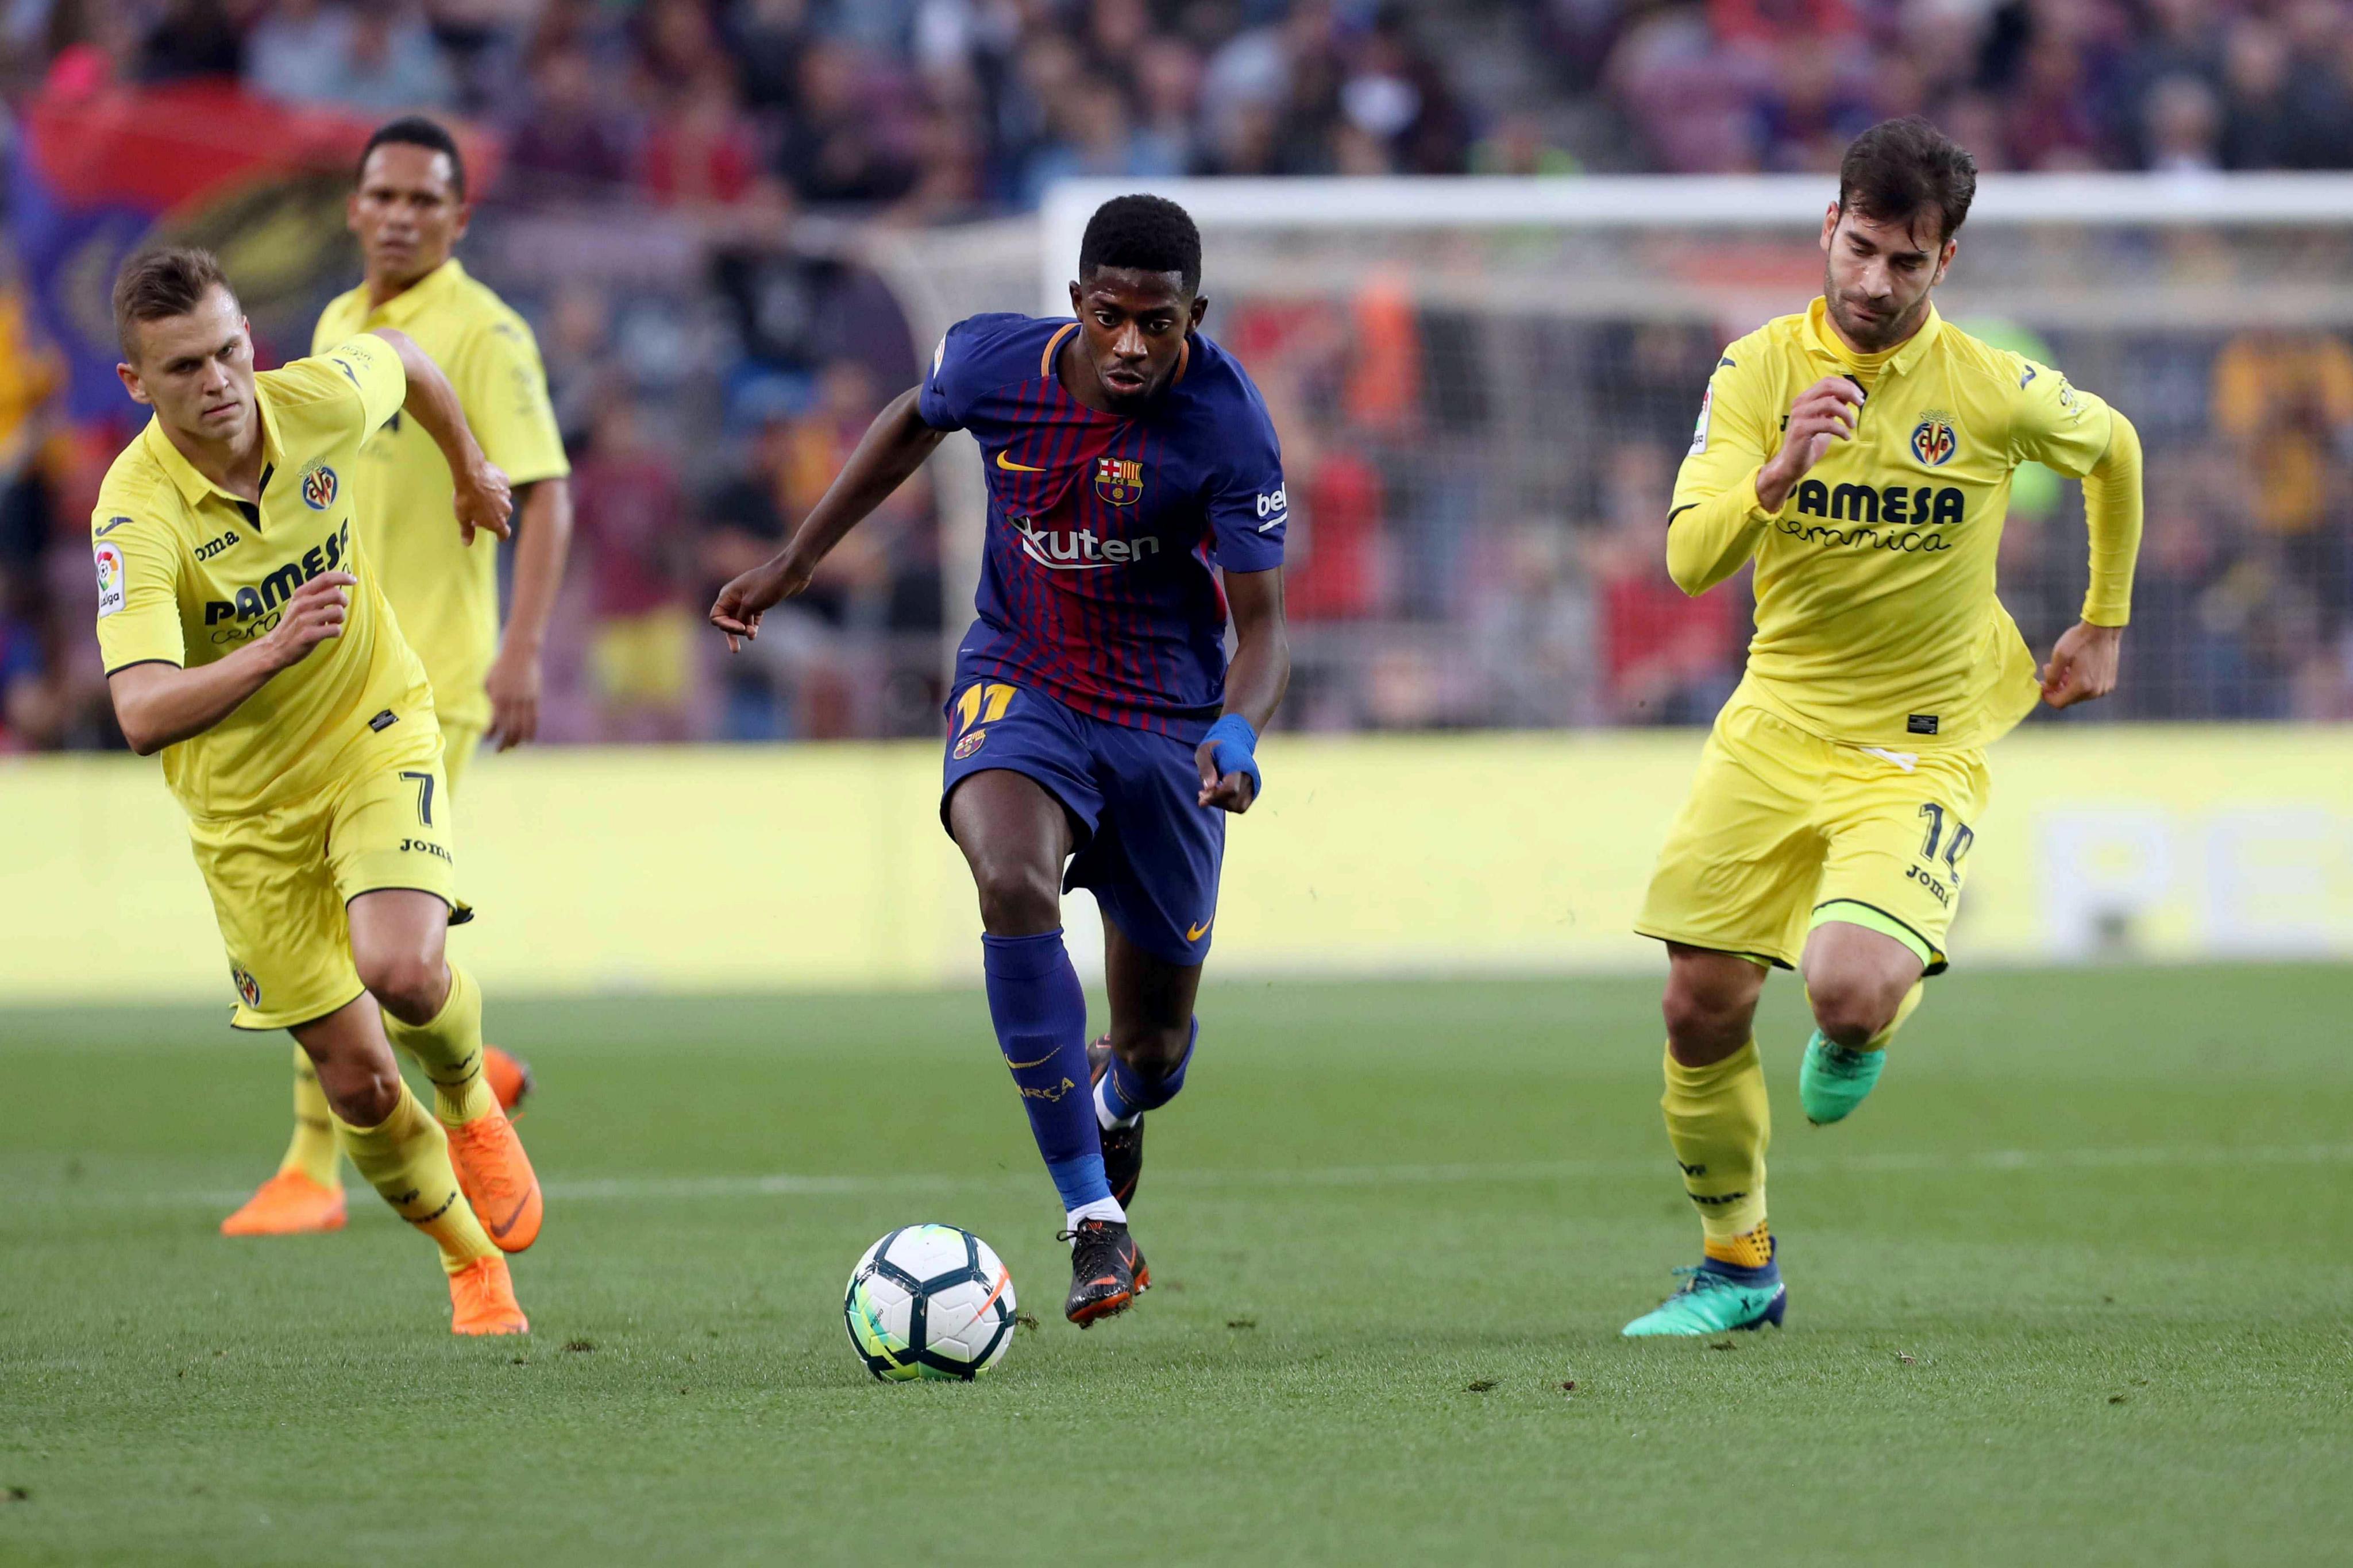 Barcelona extendió su campaña admirable con triunfo 5-1 ante Villarreal